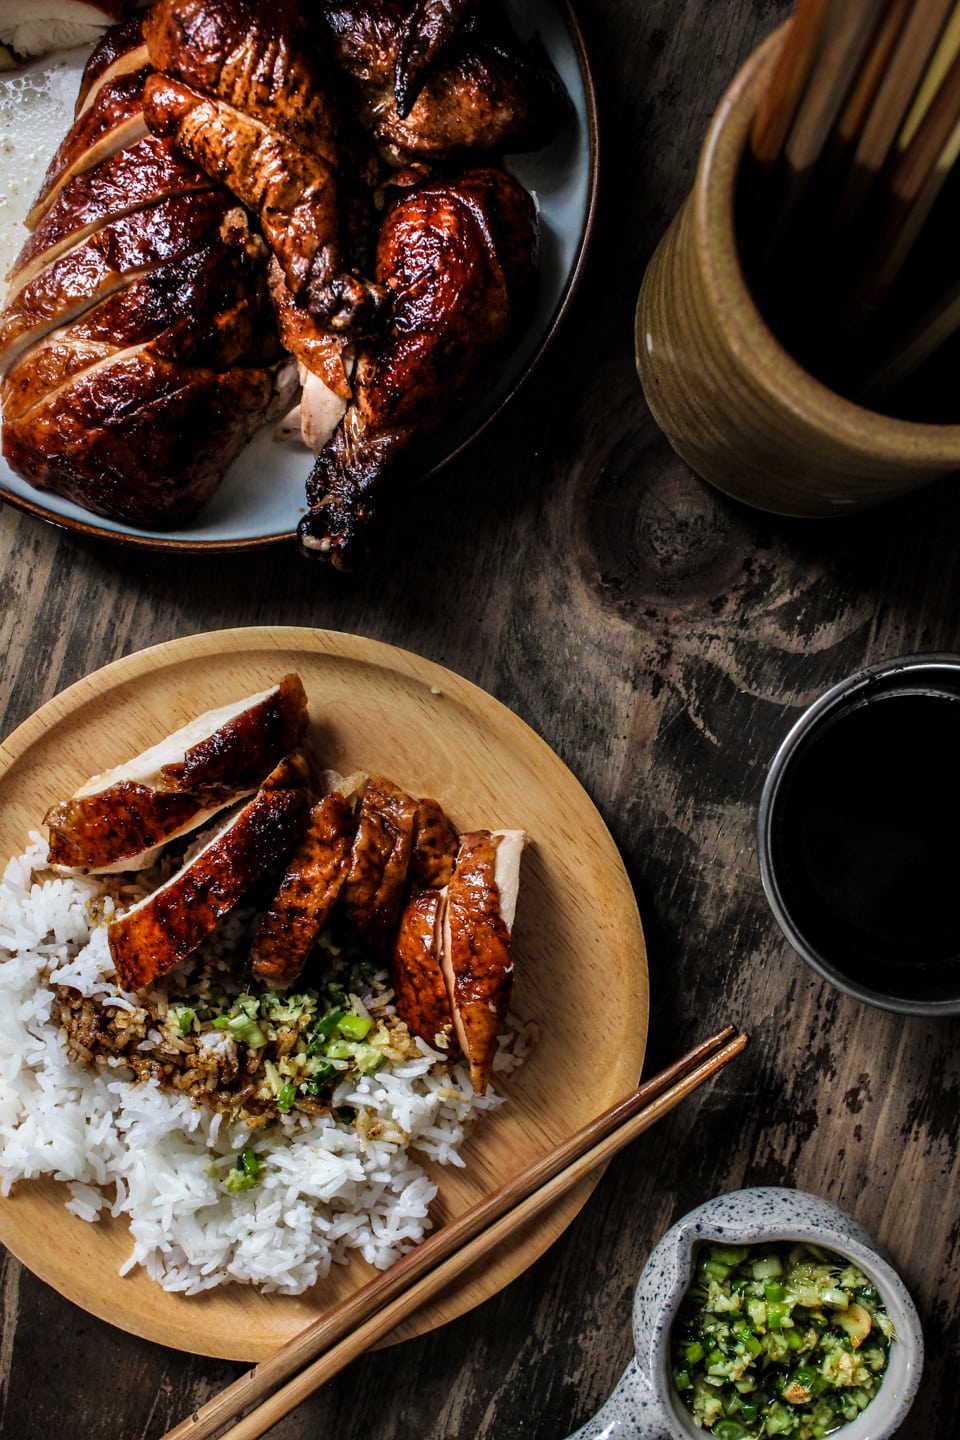  Poulet de Pékin servi dans une assiette avec du riz et de la sauce aux échalotes au gingembre sur le dessus